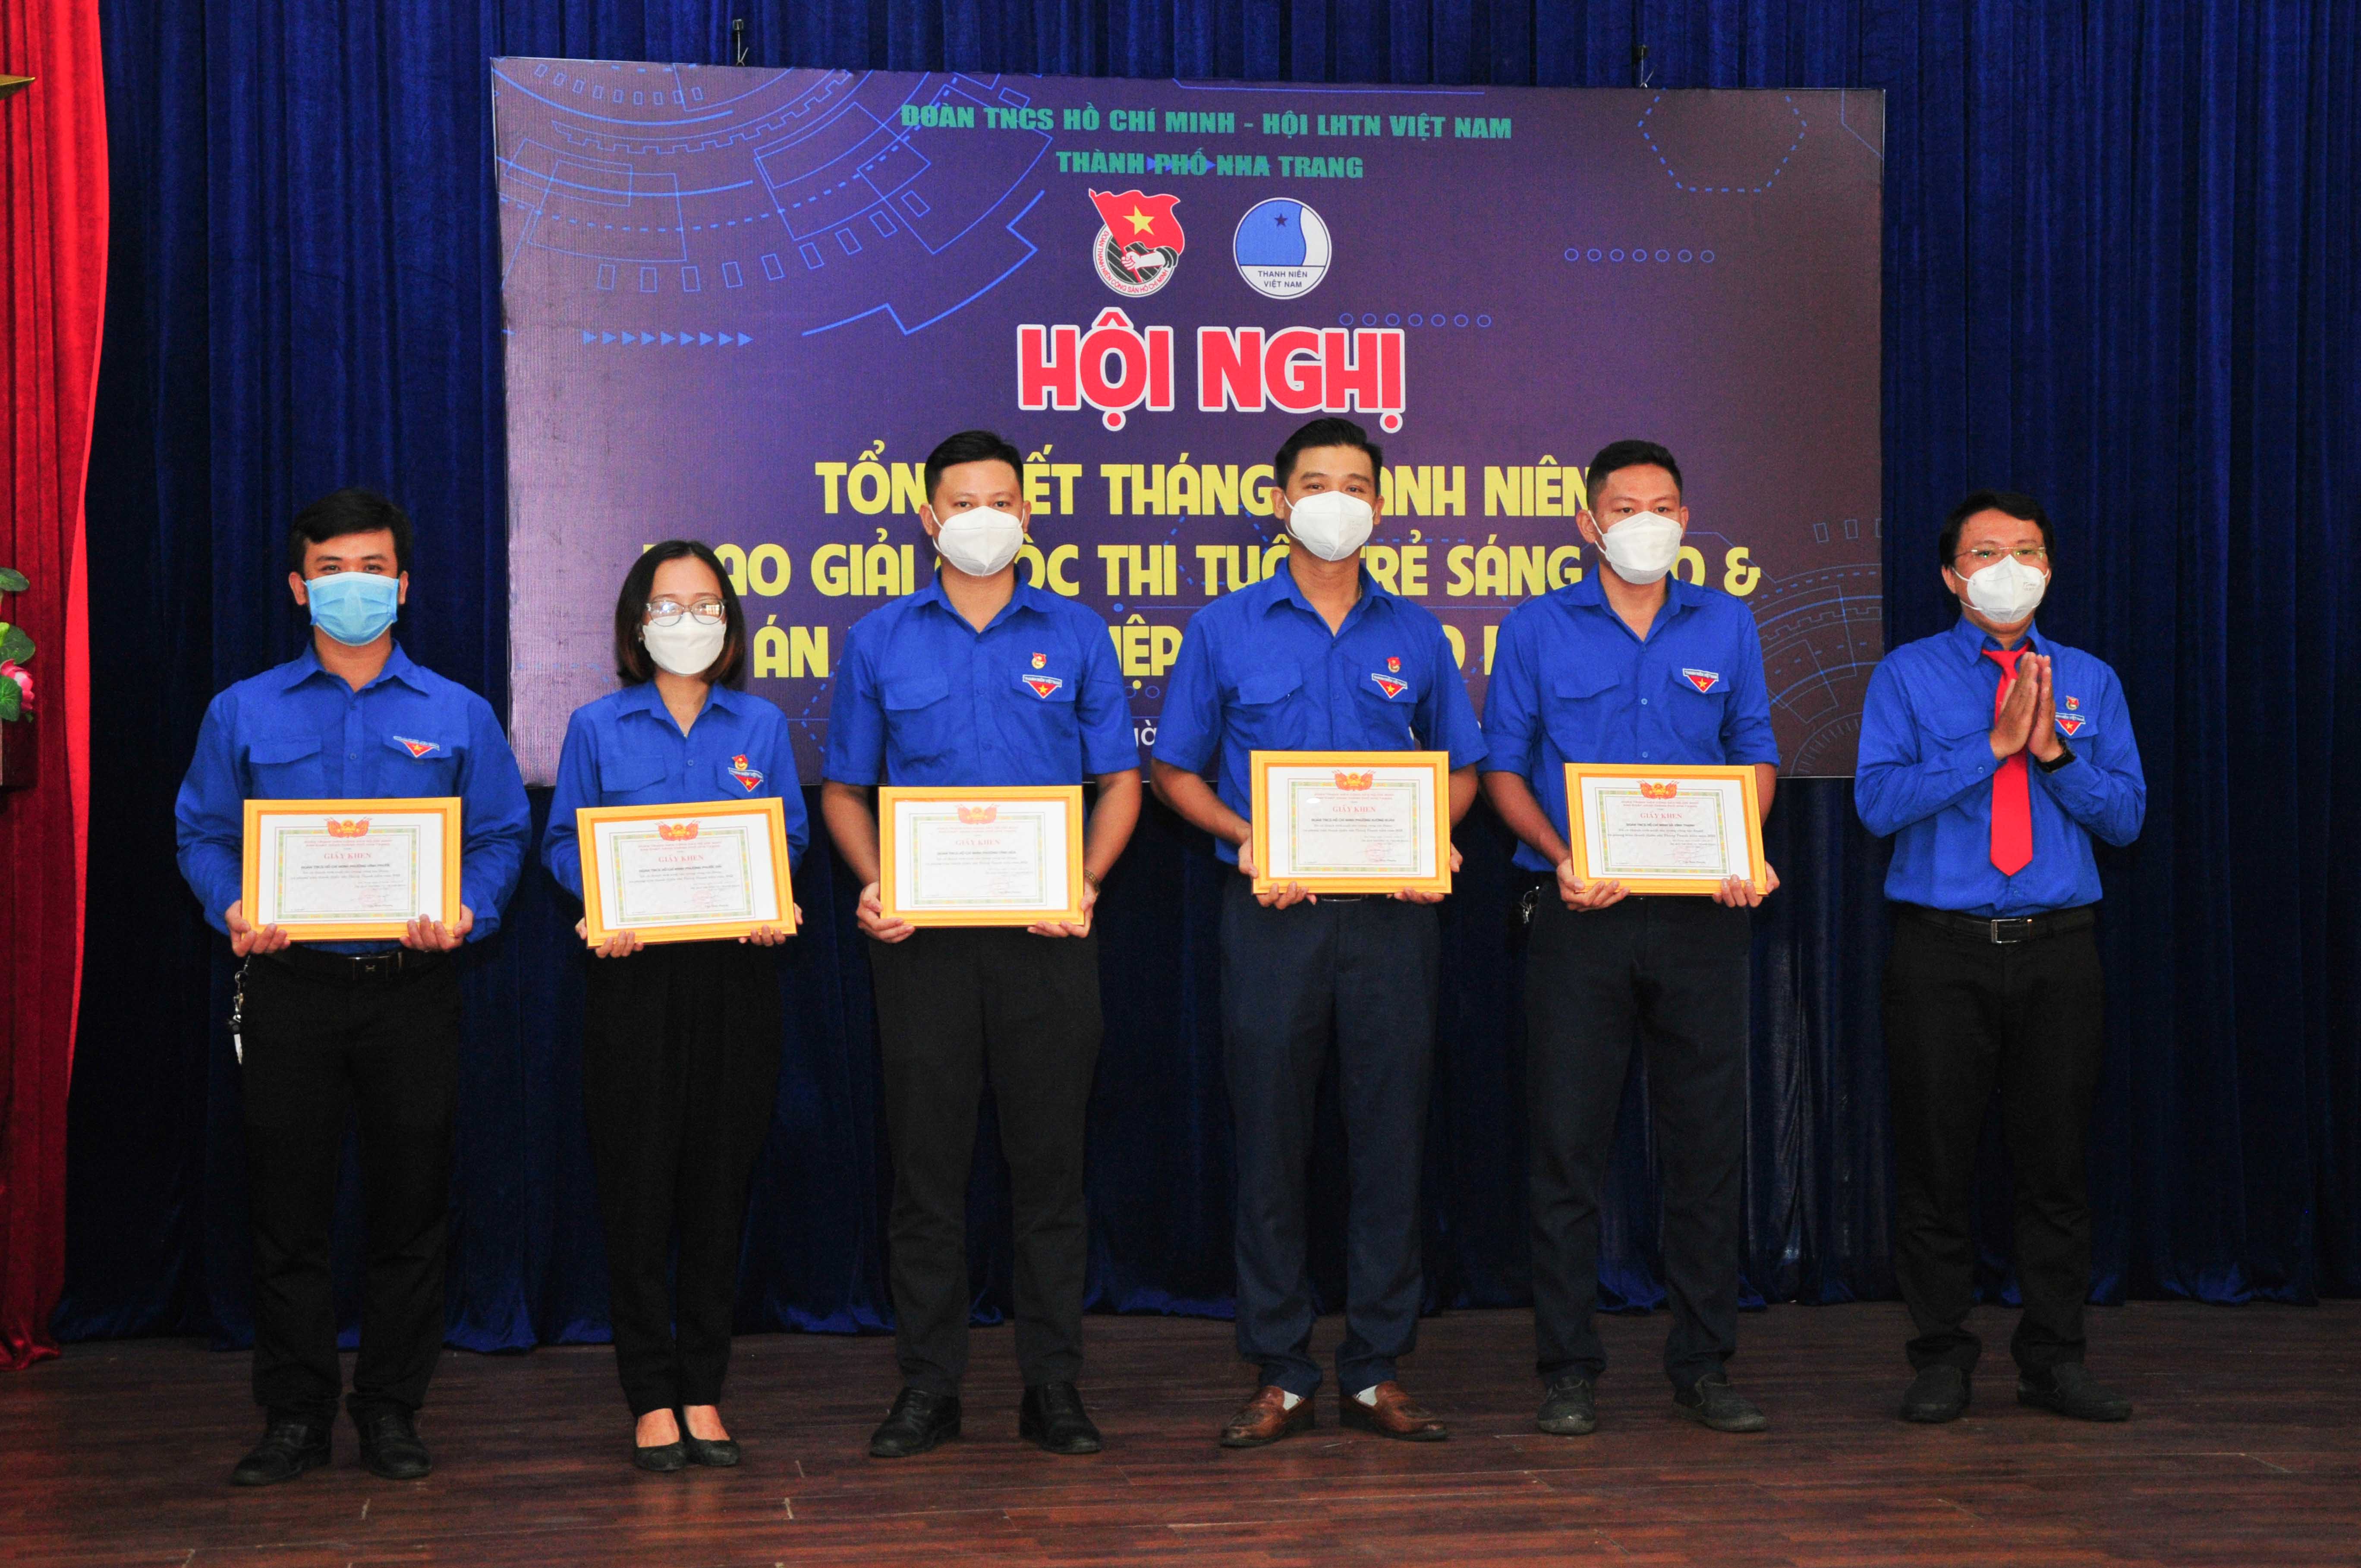 Thành đoàn Nha Trang khen thưởng các tập thể có thành tích xuất sắc trong Tháng Thanh niên